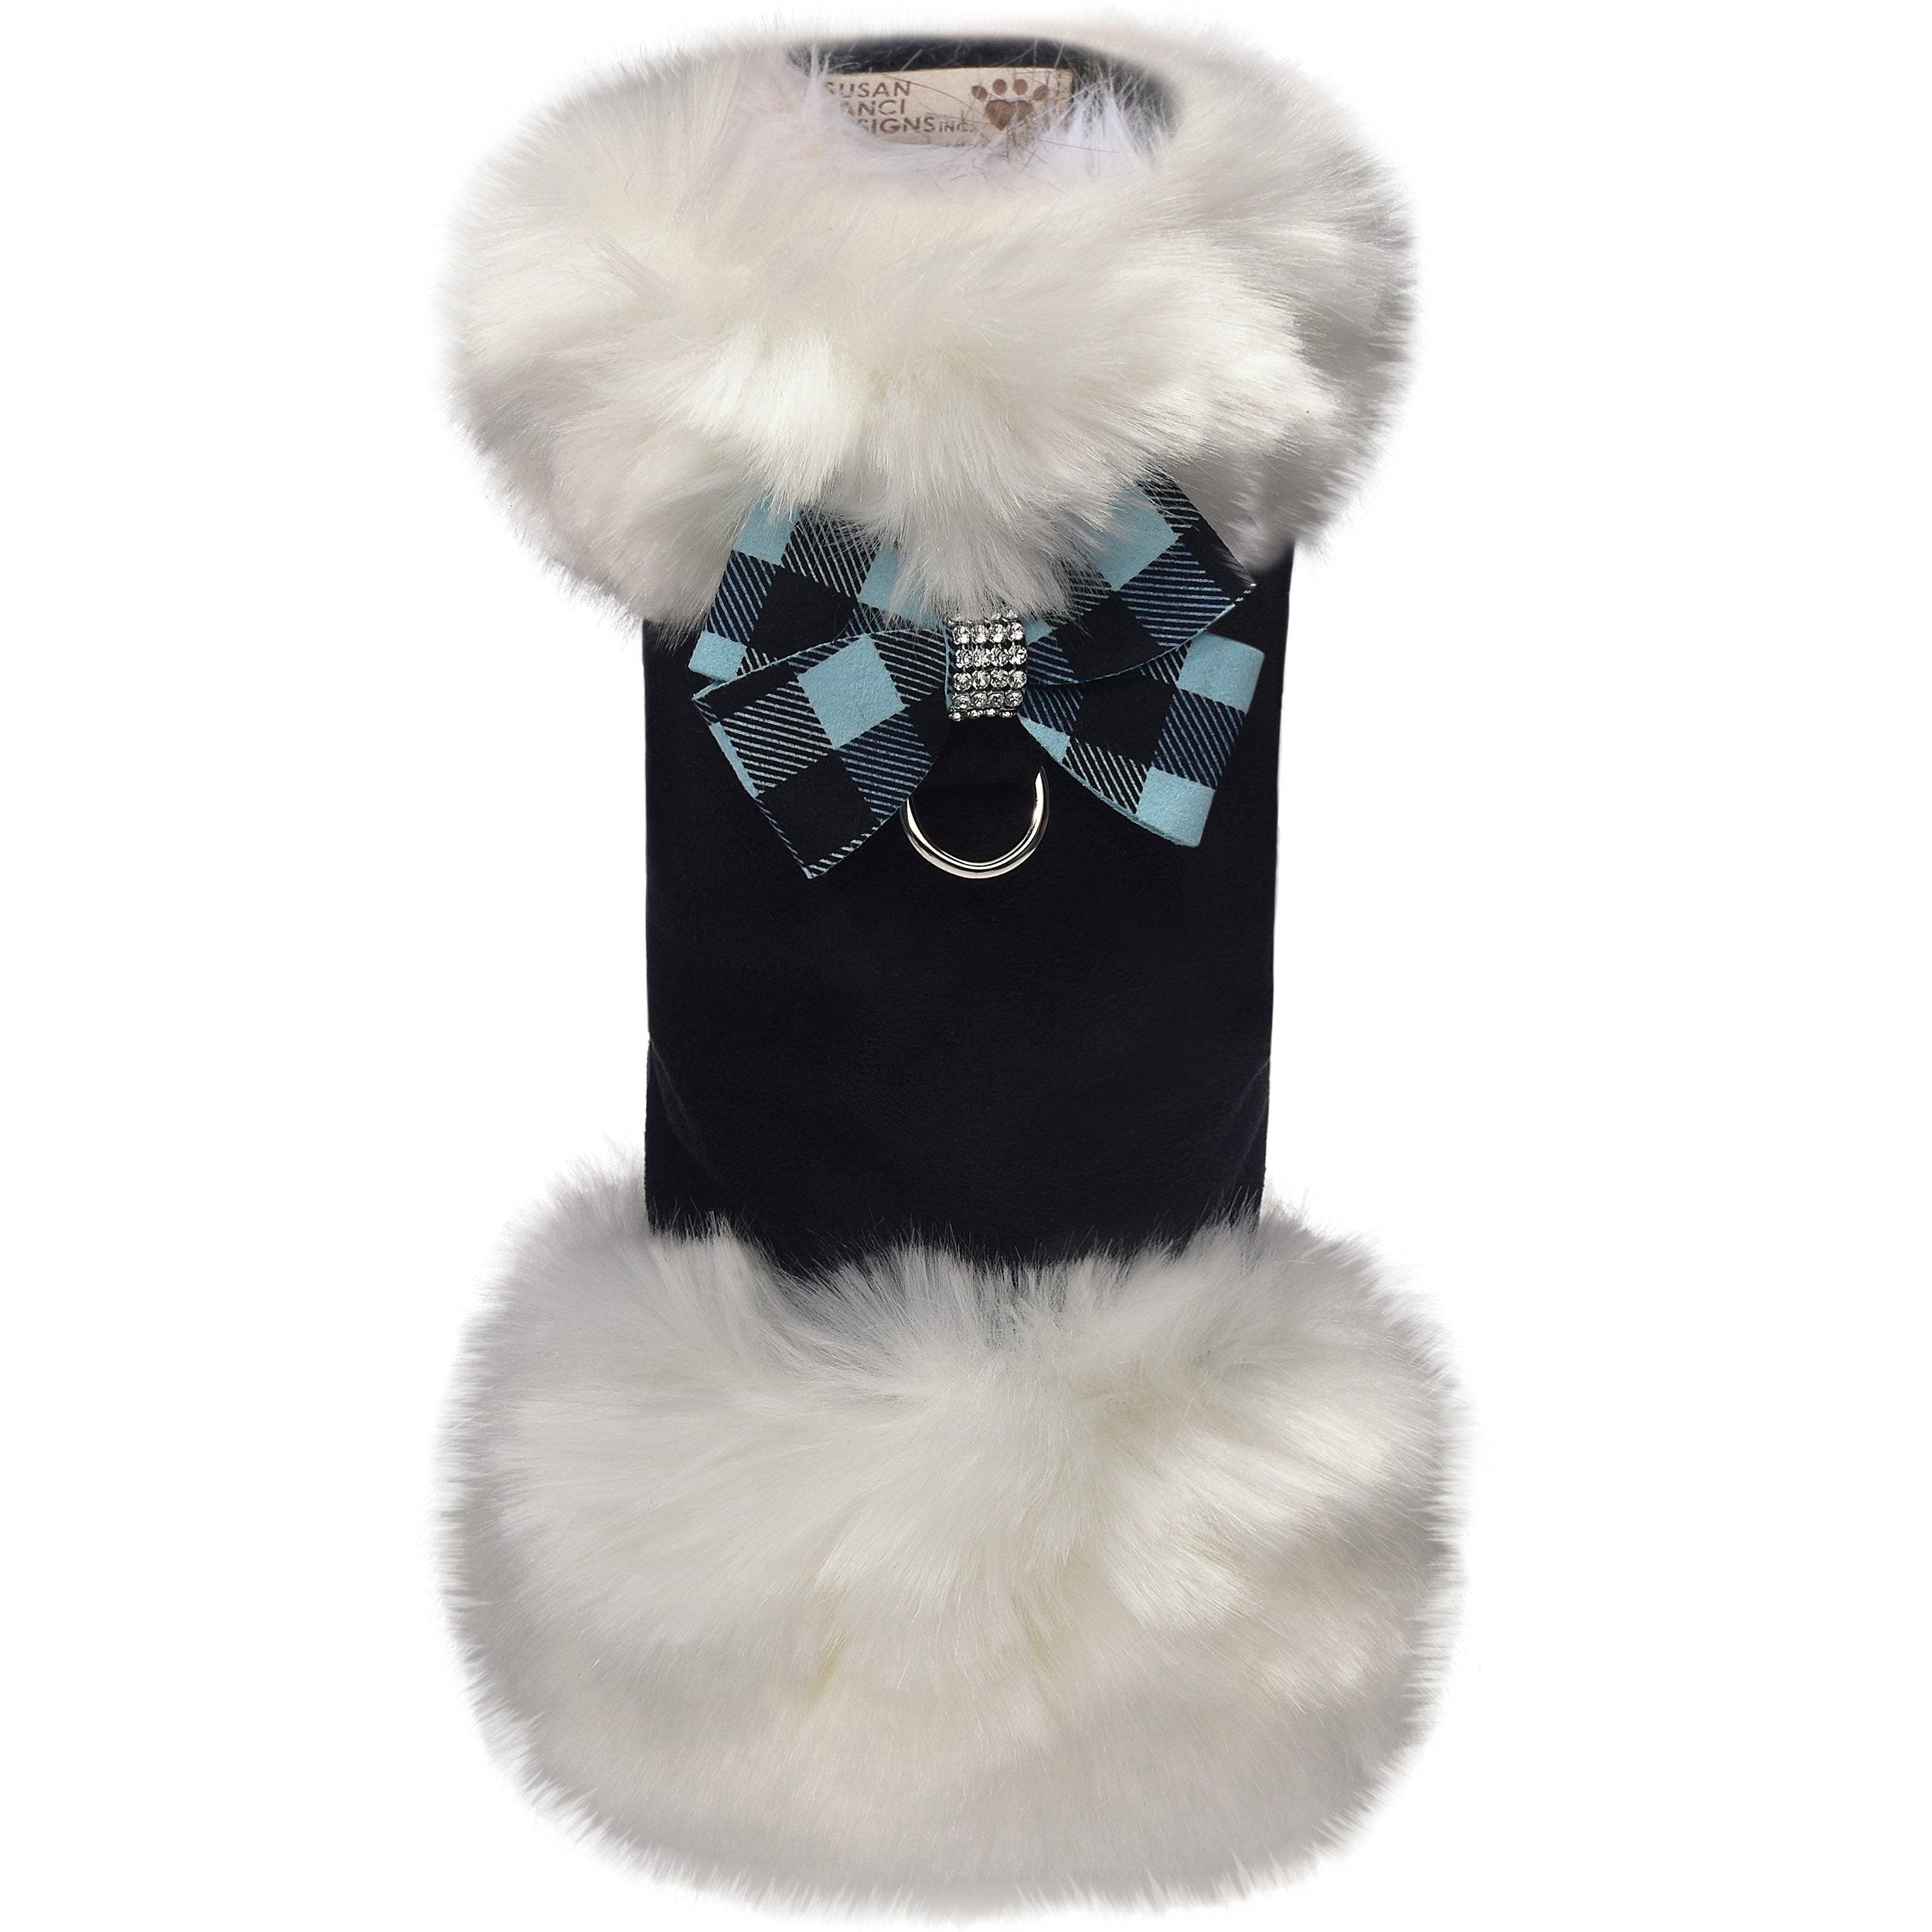 Tiffi Gingham Nouveau Bow White Fox Fur Coat - Rocky & Maggie's Pet Boutique and Salon